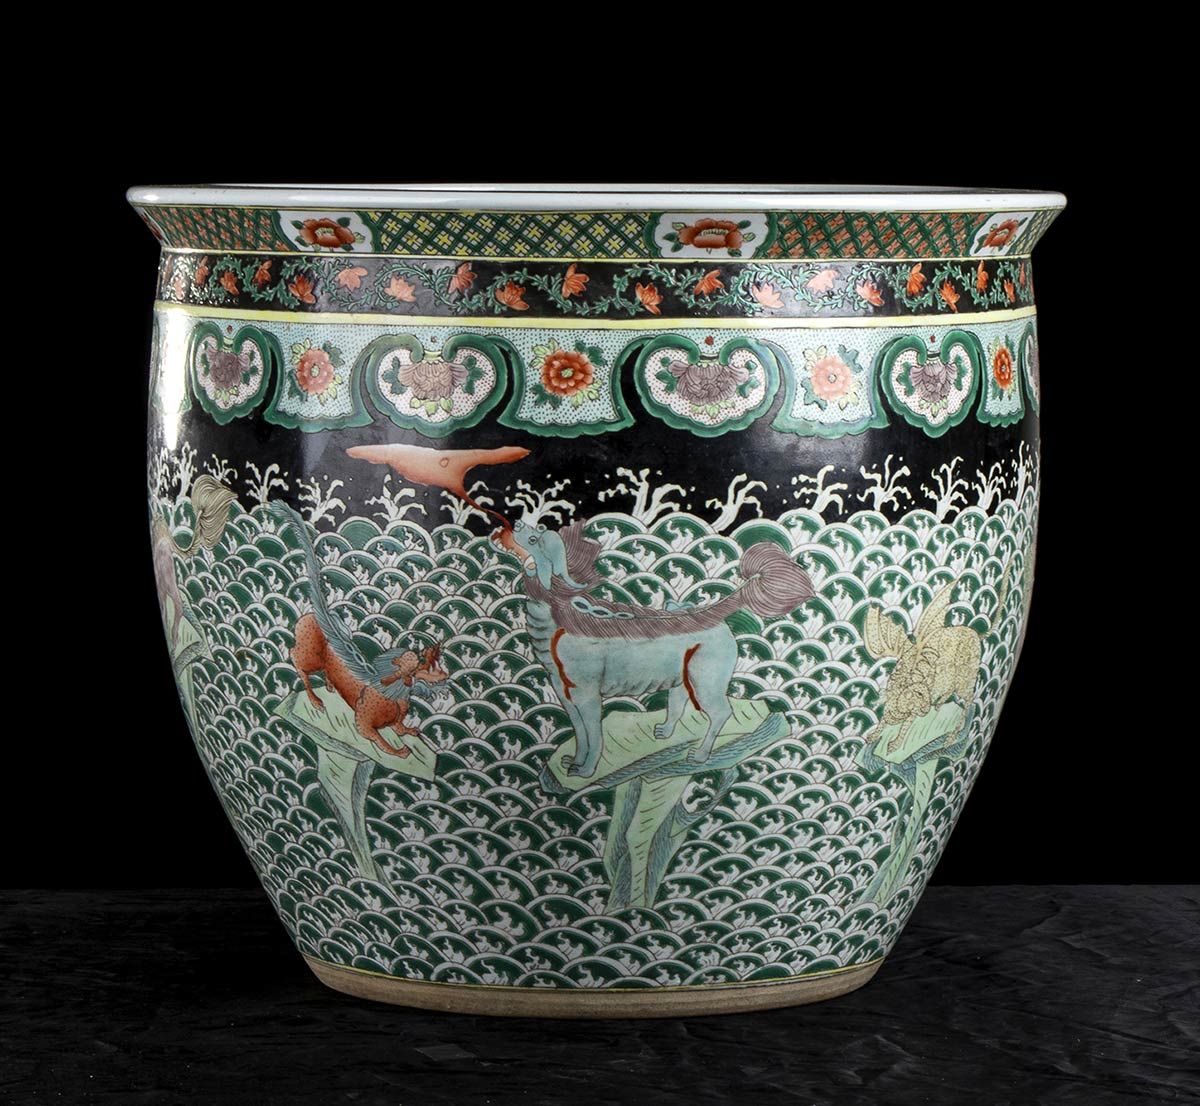 Null 一个彩绘陶瓷罐
中国，20世纪

圆形截面，外表面有黑底多色装饰，上半部分是花卉和几何图案，下半部分是海浪中的奇妙动物。

46 x 39厘米